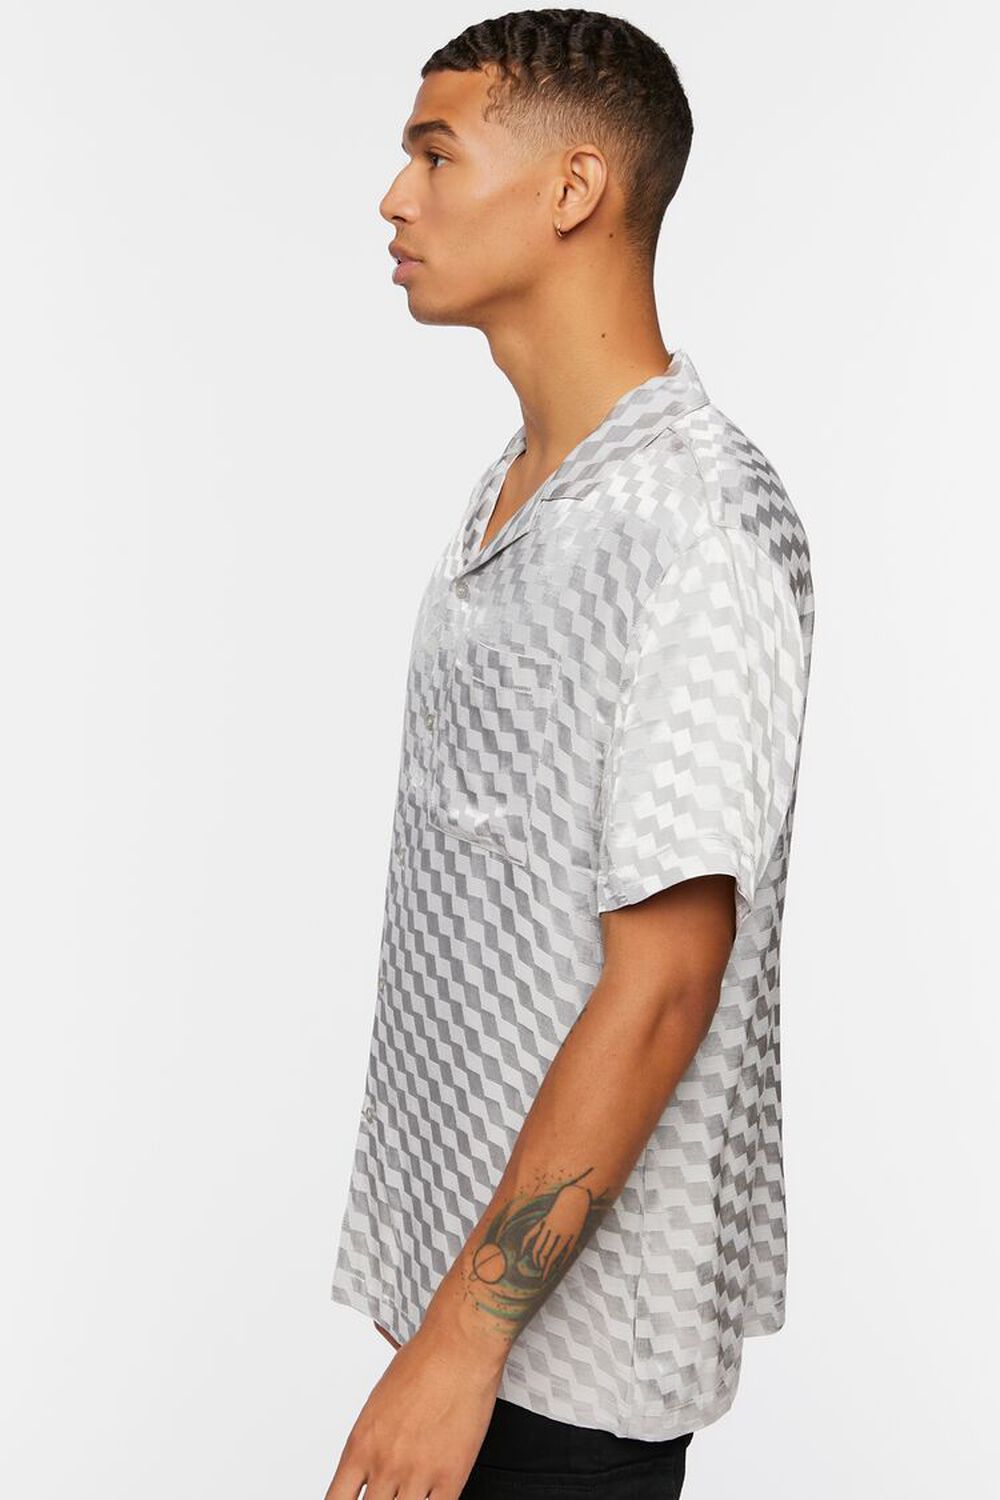 GREY Satin Checkered Shirt, image 2